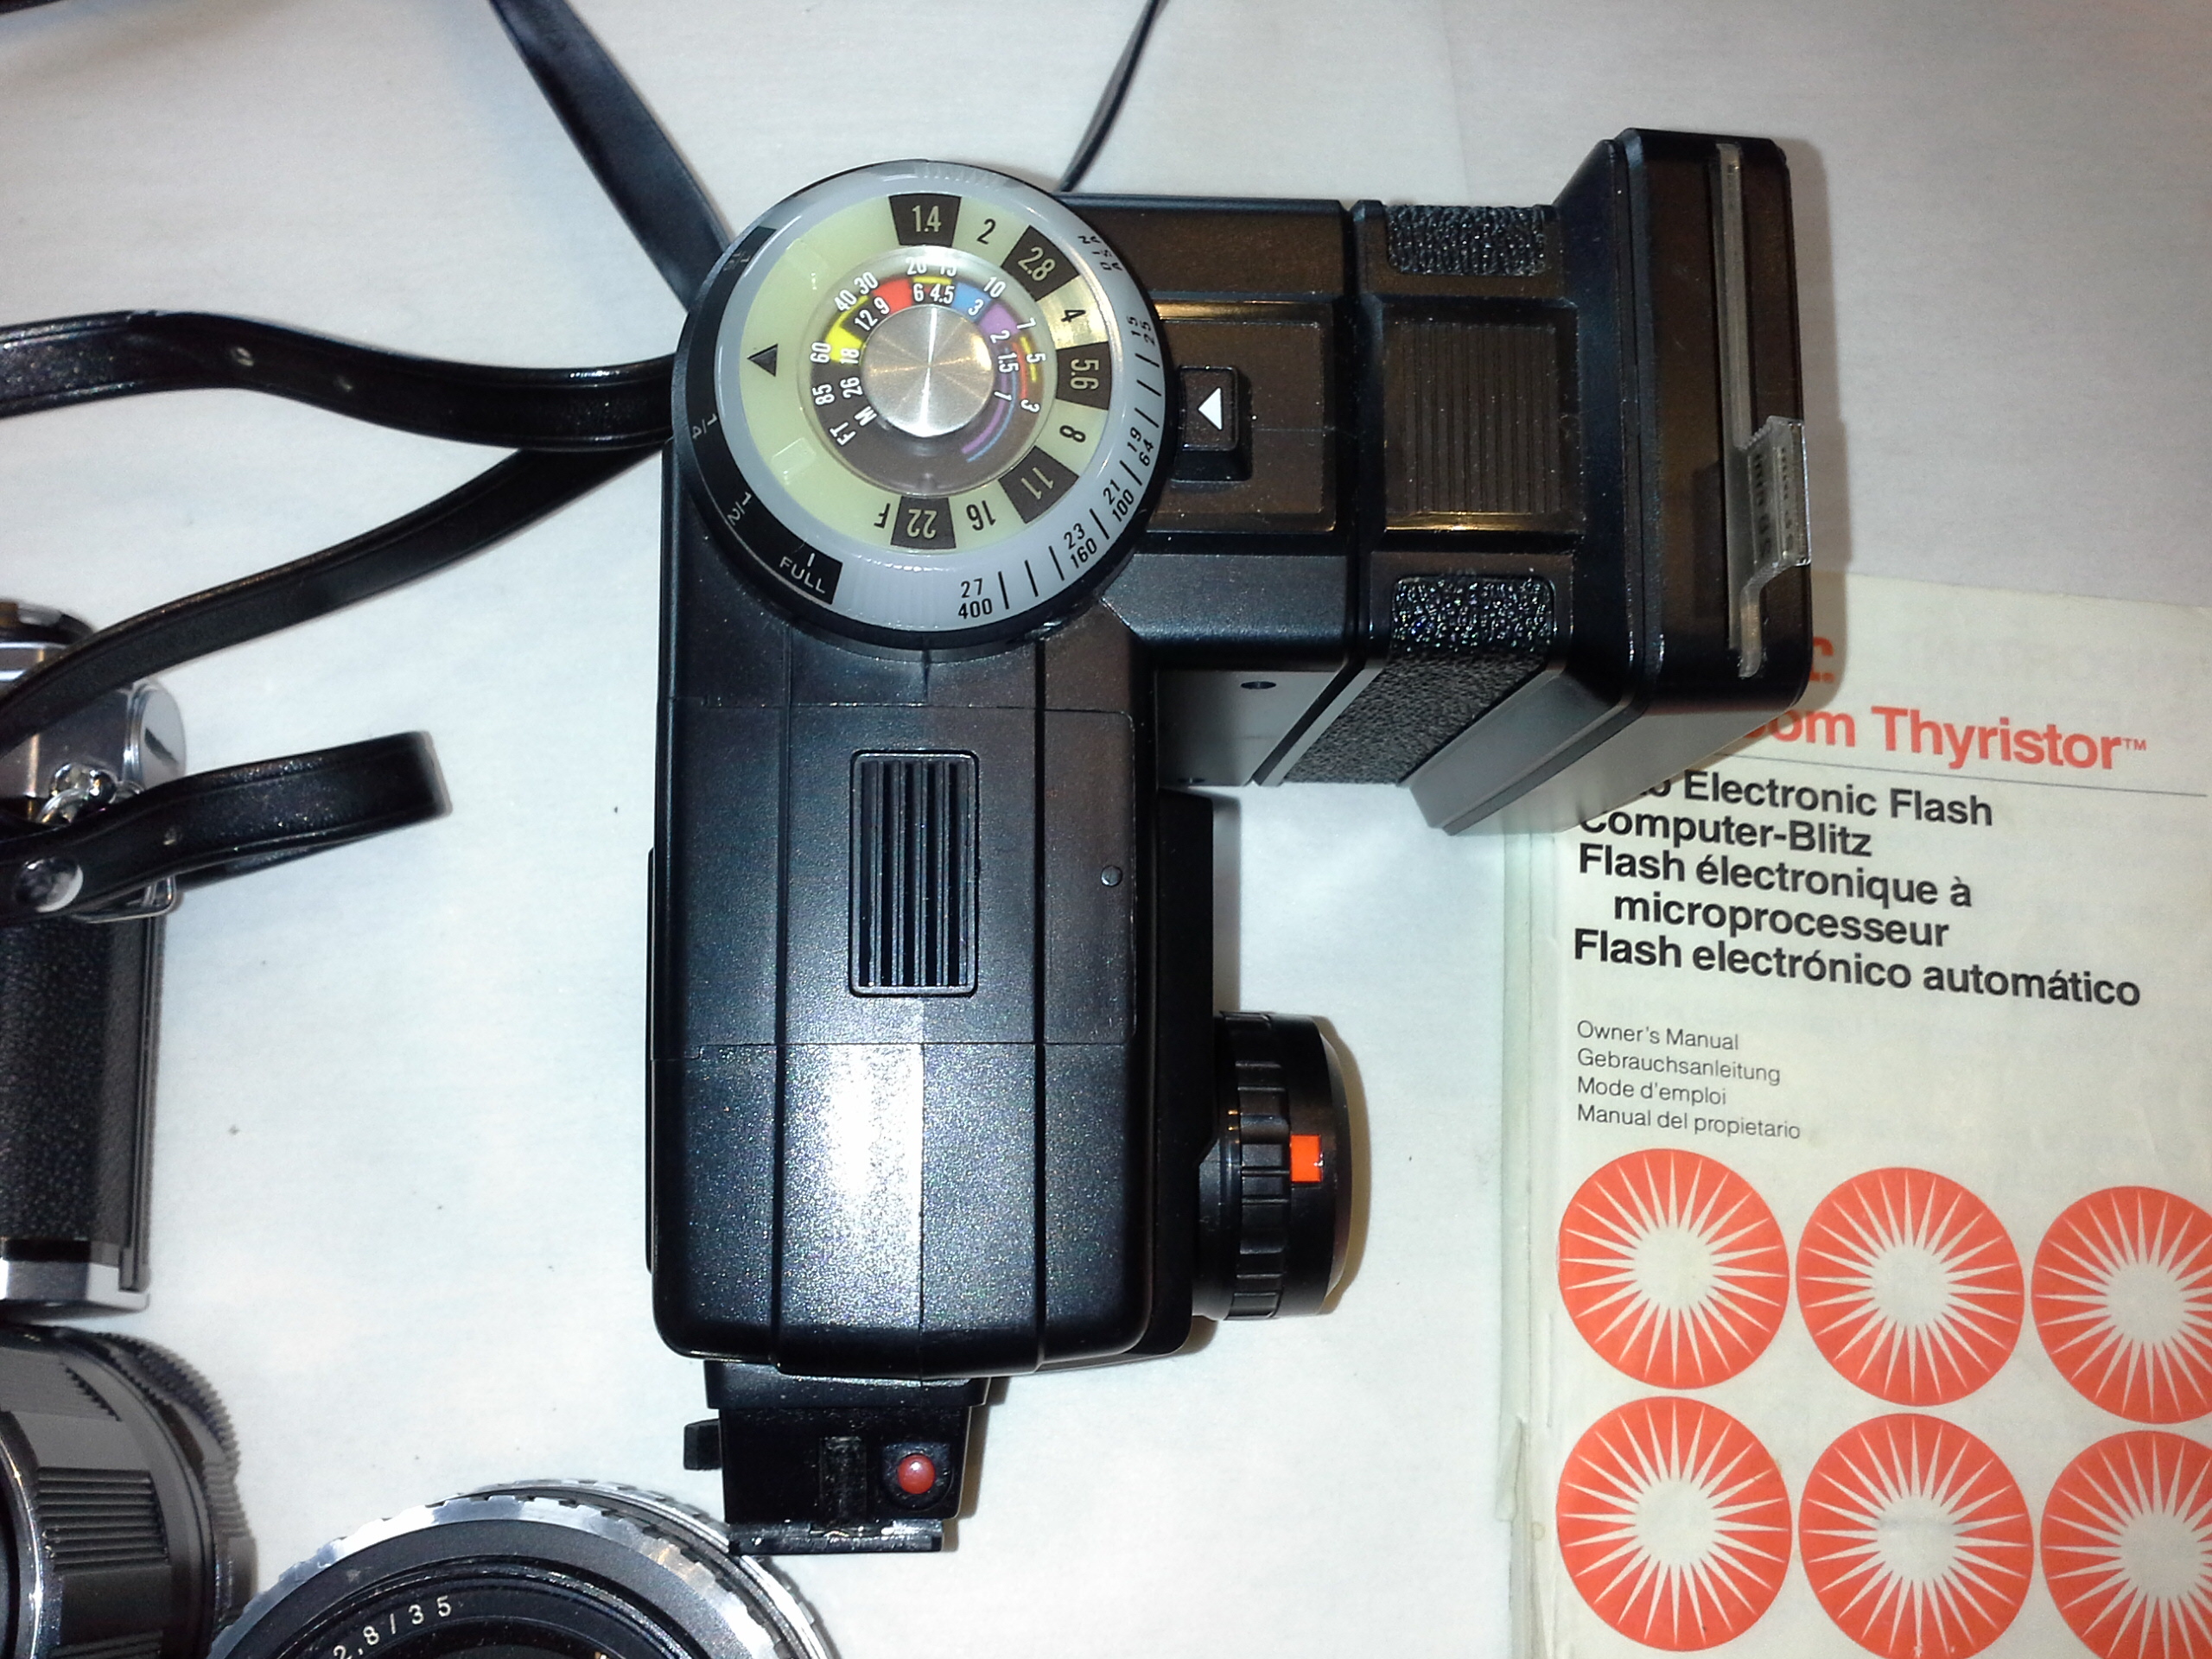 Fotokoffer mit Fujica ST 701 Kamera und Zubehör